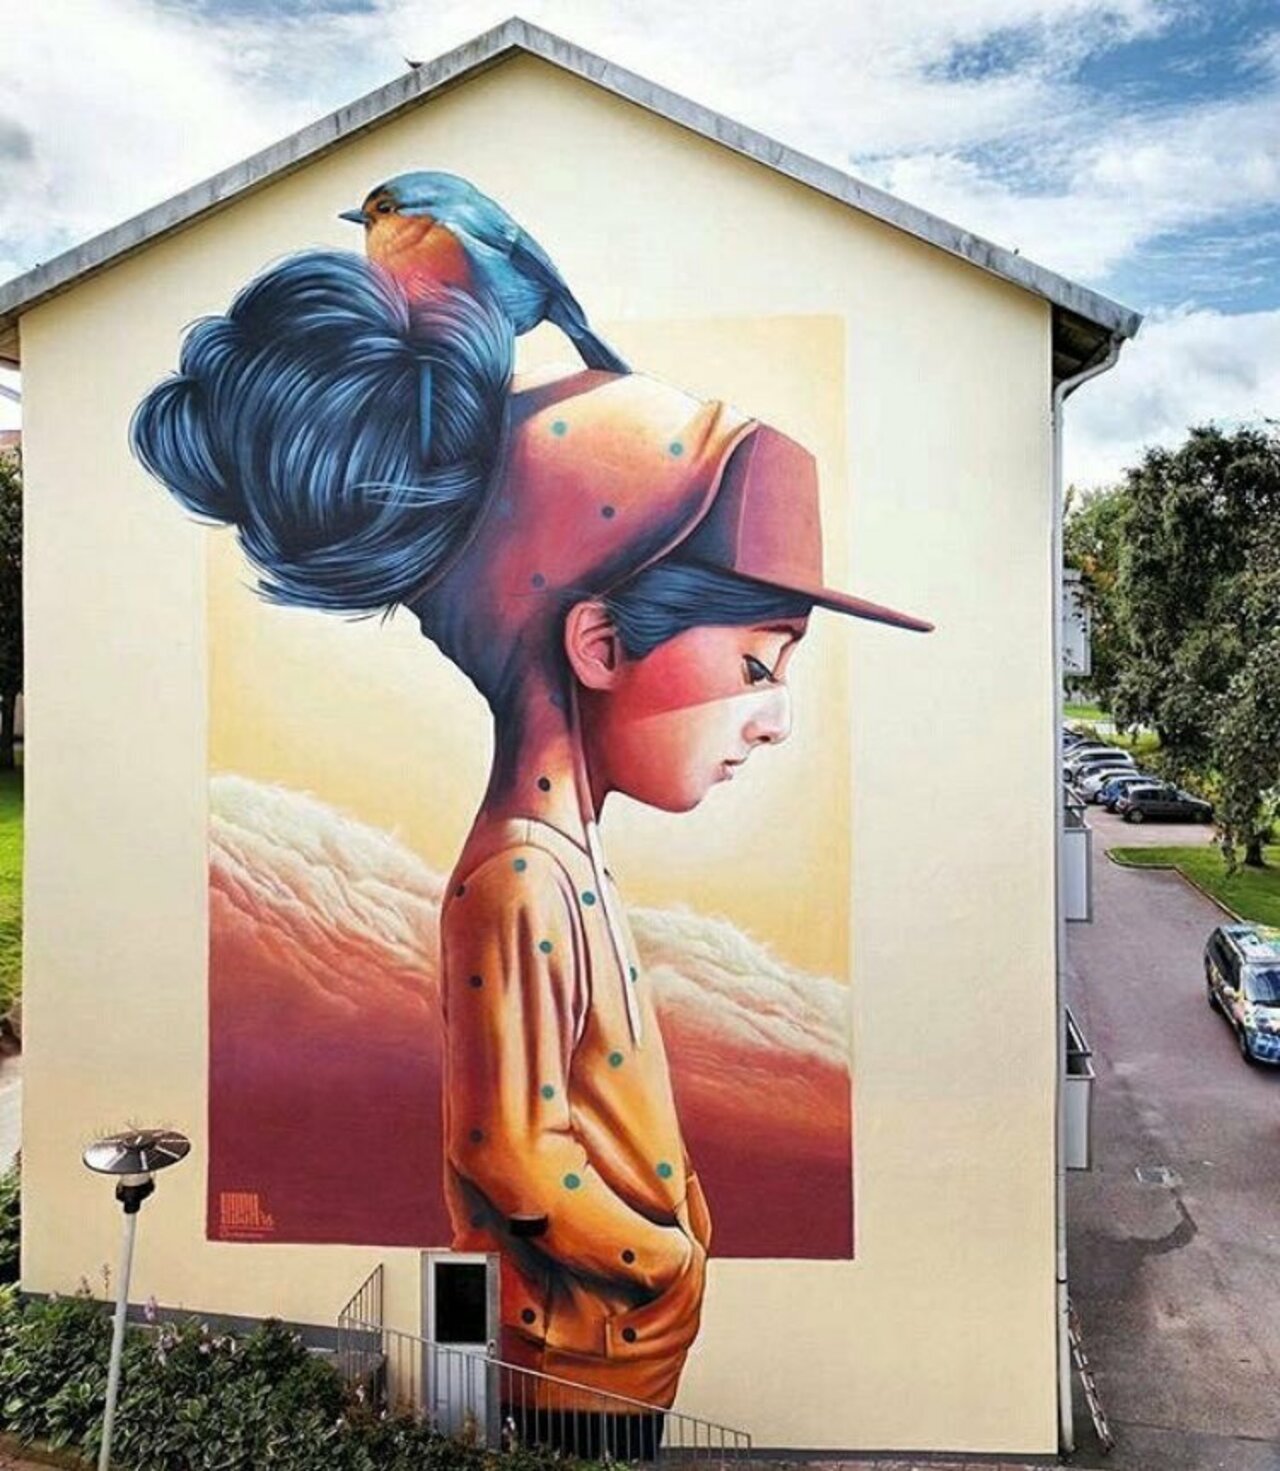 By Linus Lundin in Gothenburg, Sweeden#art #graffiti #mural #streetart https://t.co/3IYBeY7P03